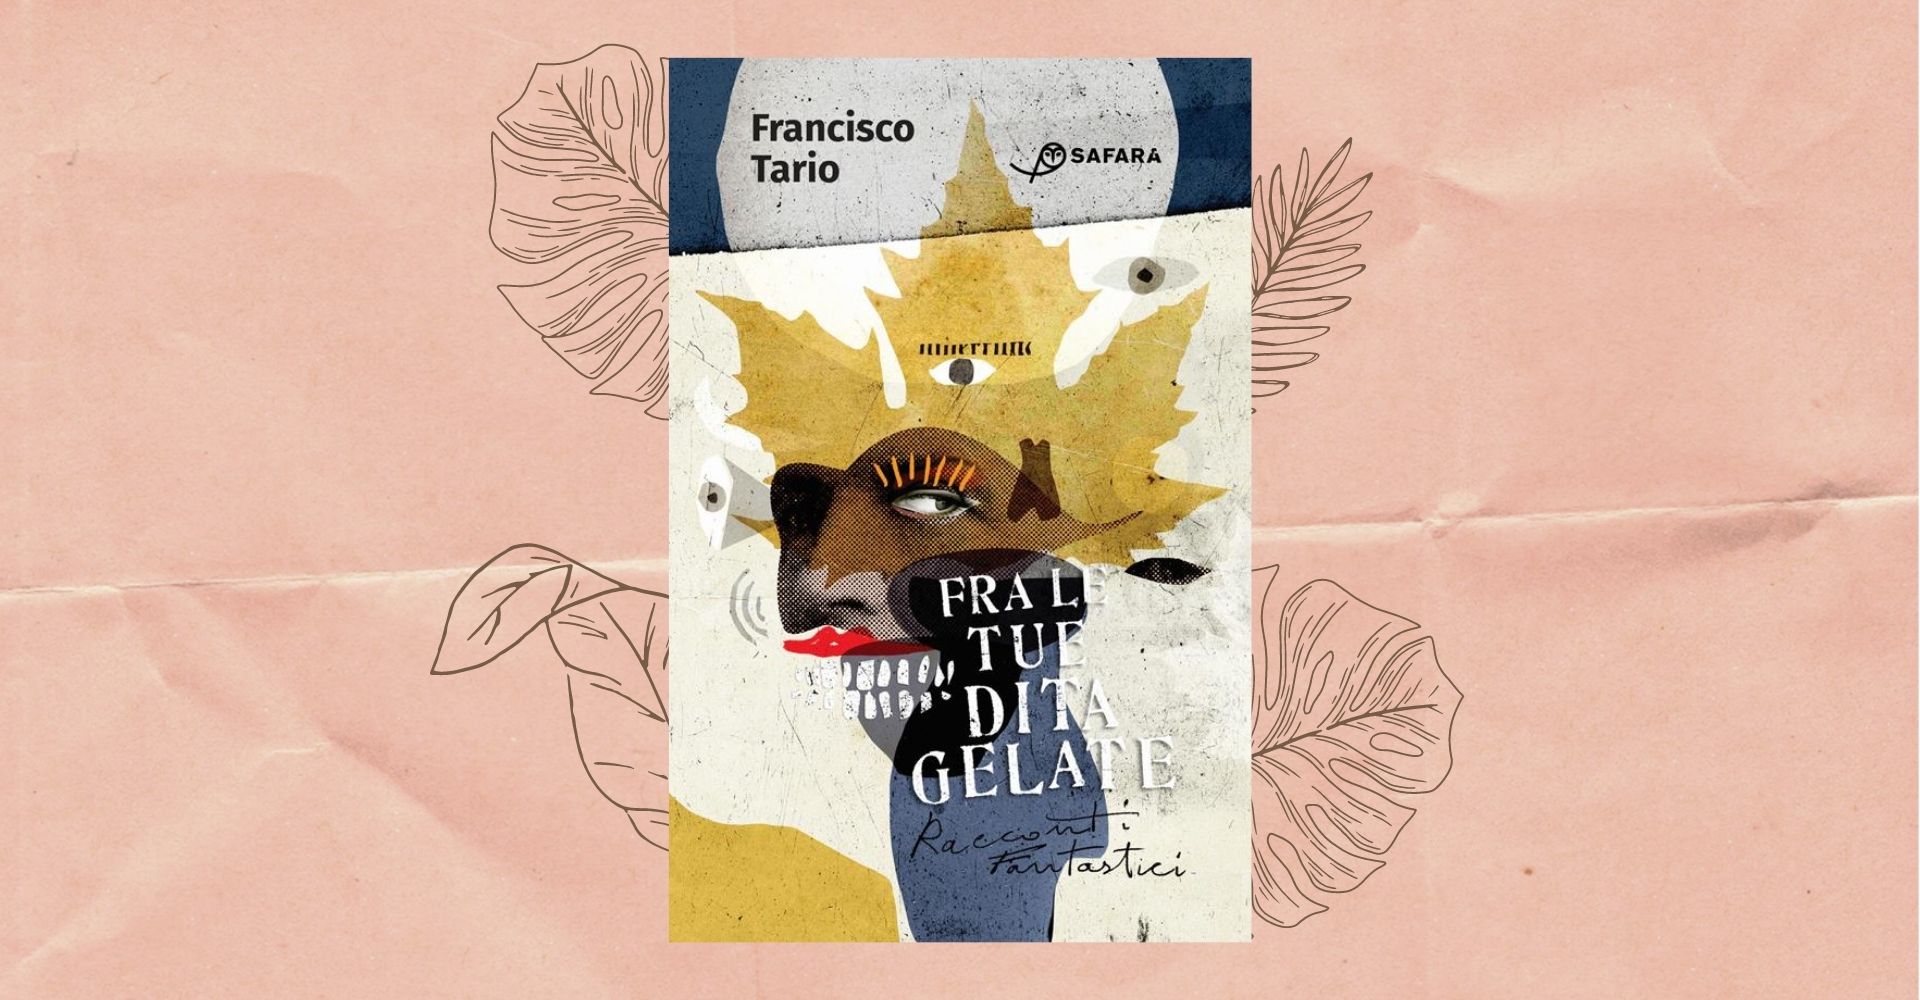 "Fra le tue dita gelate": i racconti "fantastici" di Francisco Tario, oltre il limite dell'umana narrazione